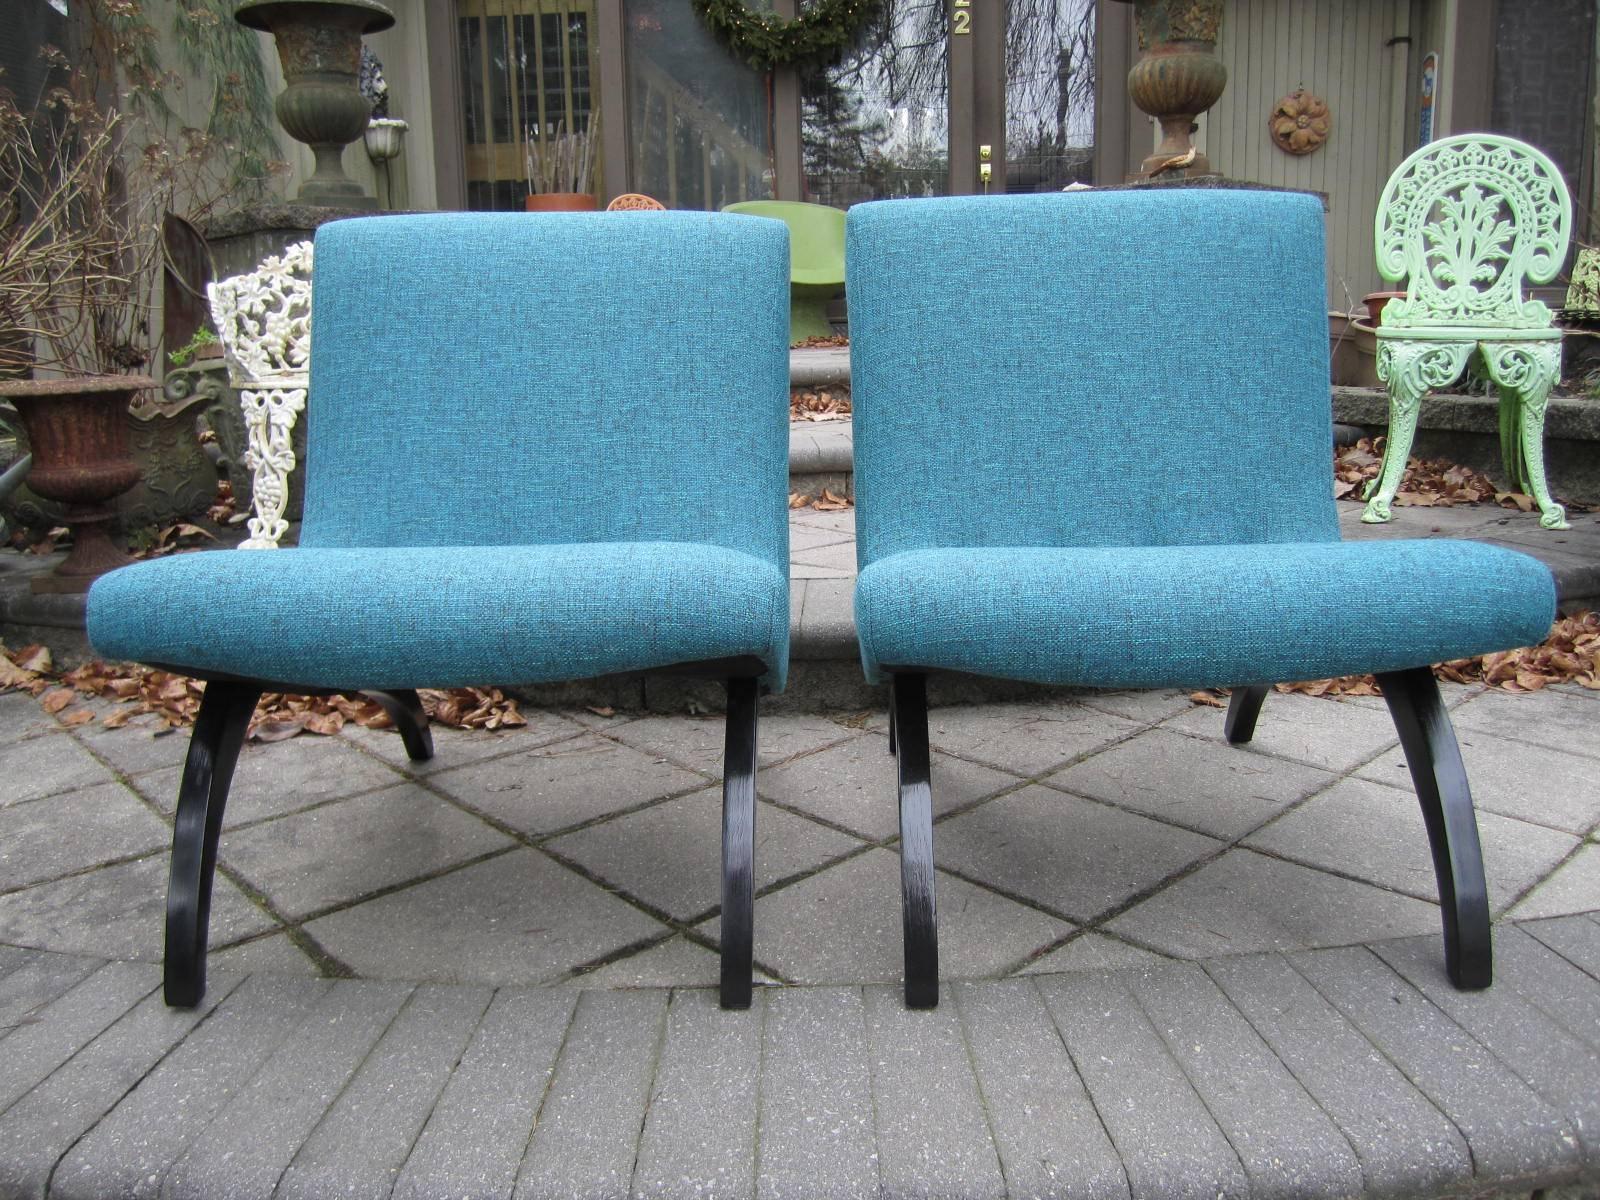 Paire de chaises à godets dans le style de Milo Baughman. Les pieds ont été nouvellement laqués en noir et les sièges nouvellement tapissés dans un magnifique tissu turquoise appelé Pool.